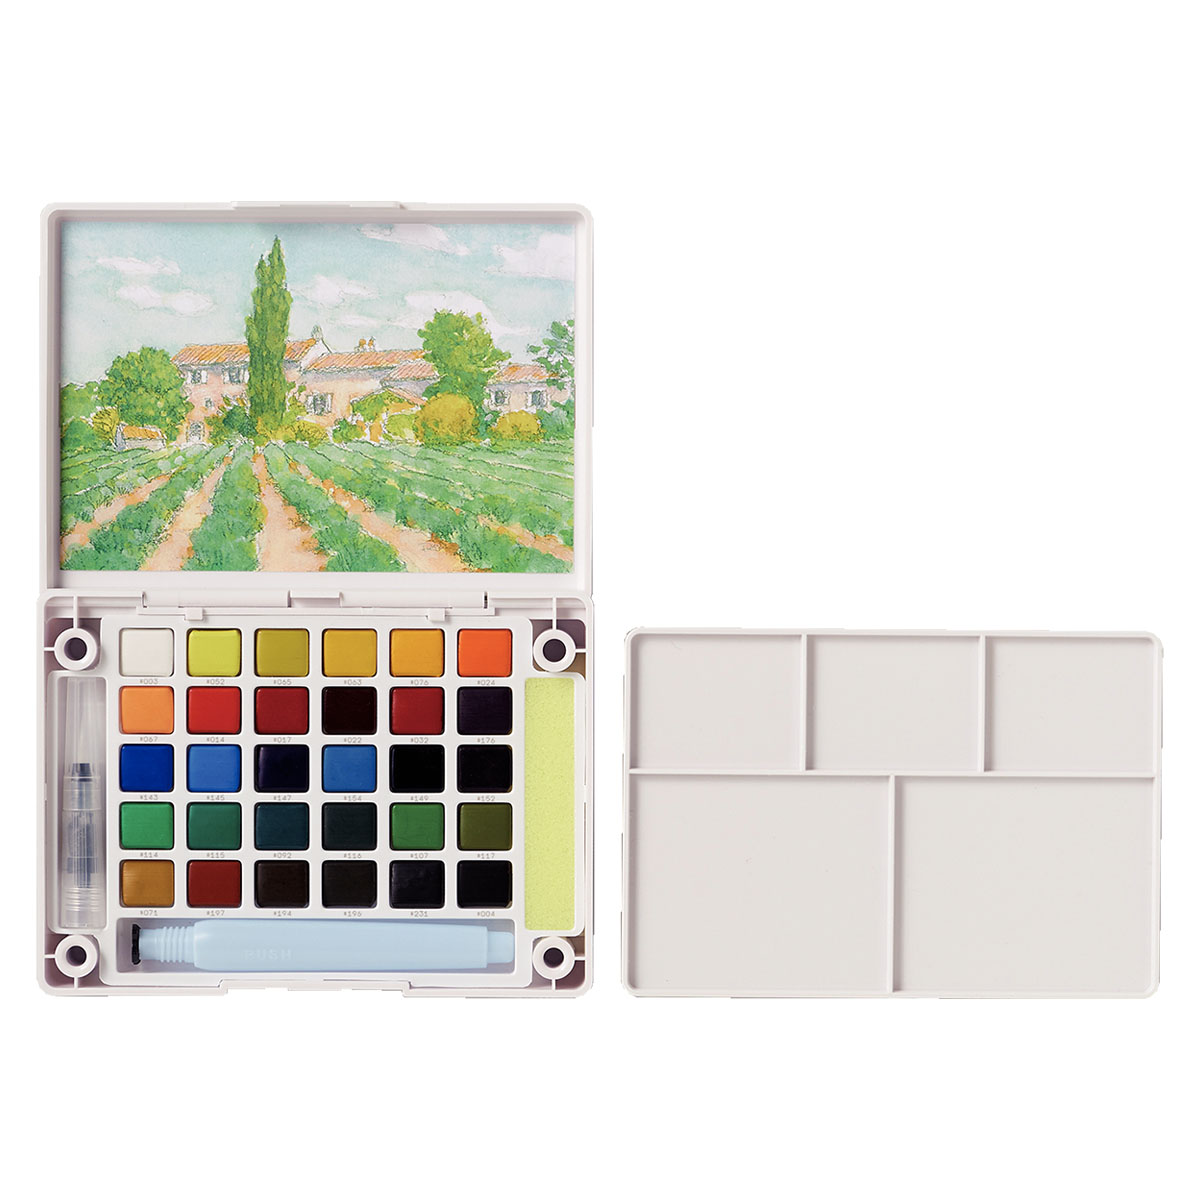 Koi Water Colors Pocket Field Sketch Box 30 + Brush i gruppen Kunstnerartikler / Farver / Akvarelmaling hos Pen Store (125615)